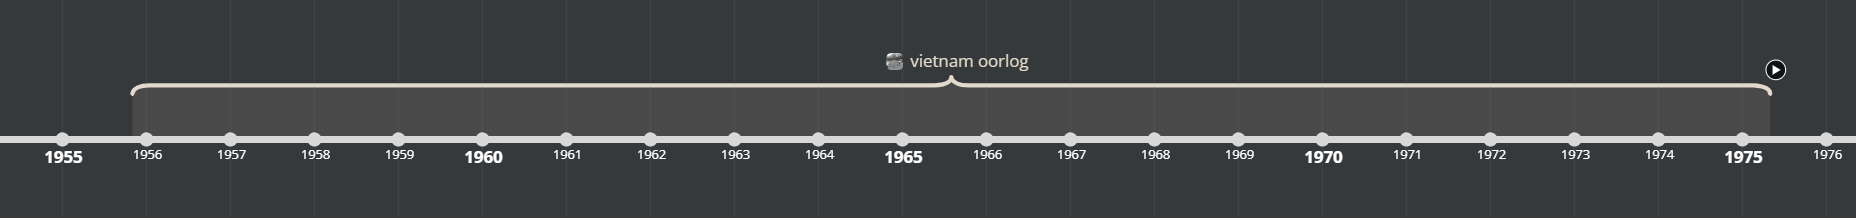 Foto van de tijdsbalk over de Vietnamoorlog